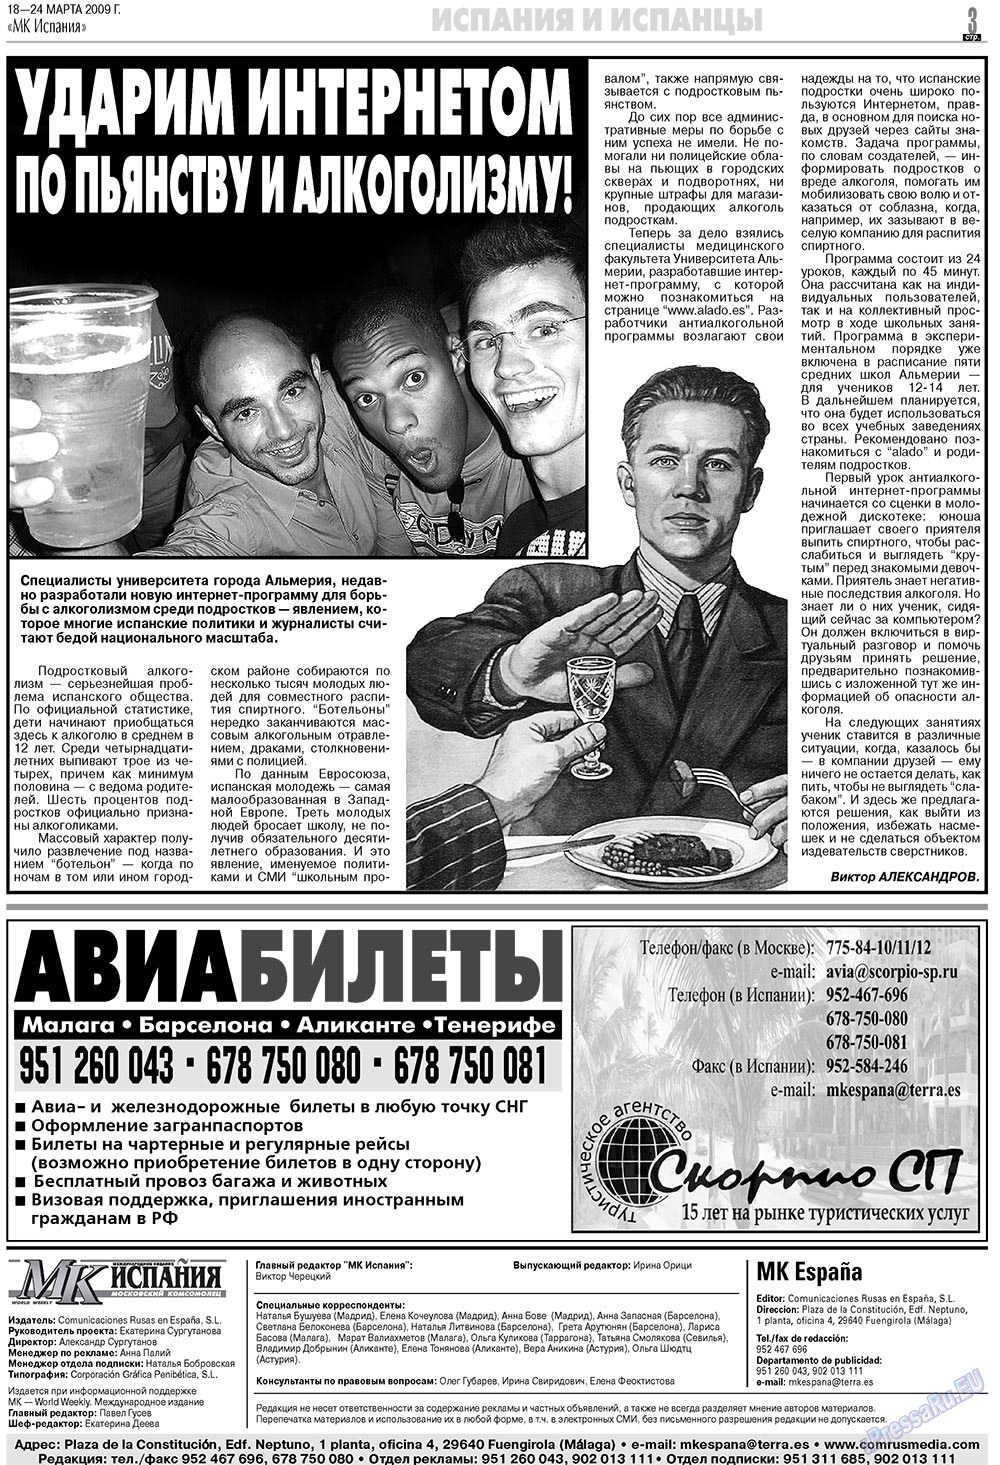 МК Испания, газета. 2009 №12 стр.3